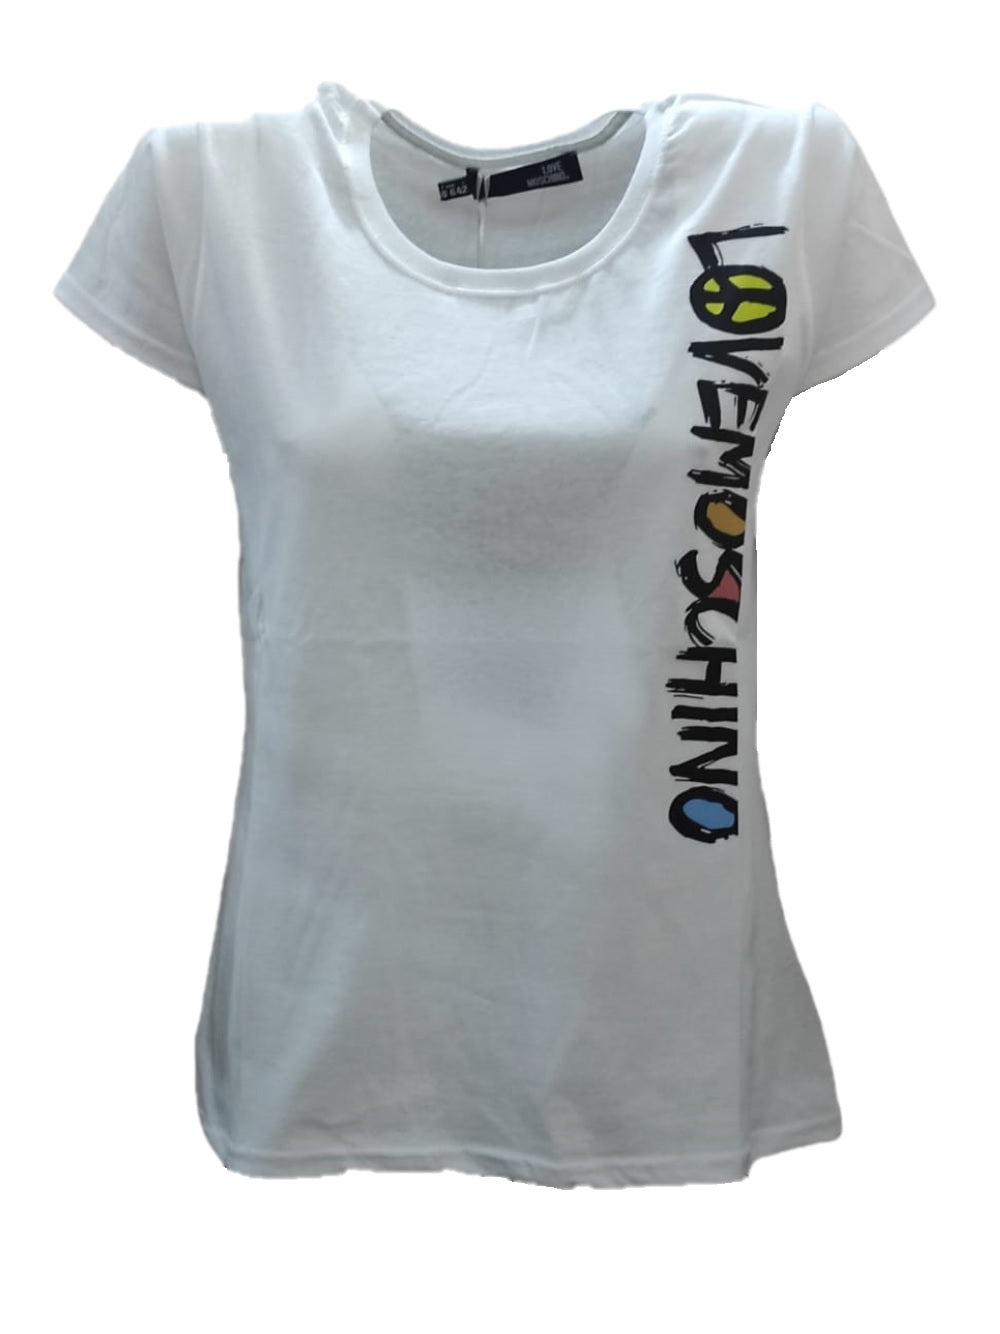 T-Shirt da donna LOVE MOSCHINO W4F1830 M3876 con logo a contrasto sul laterale